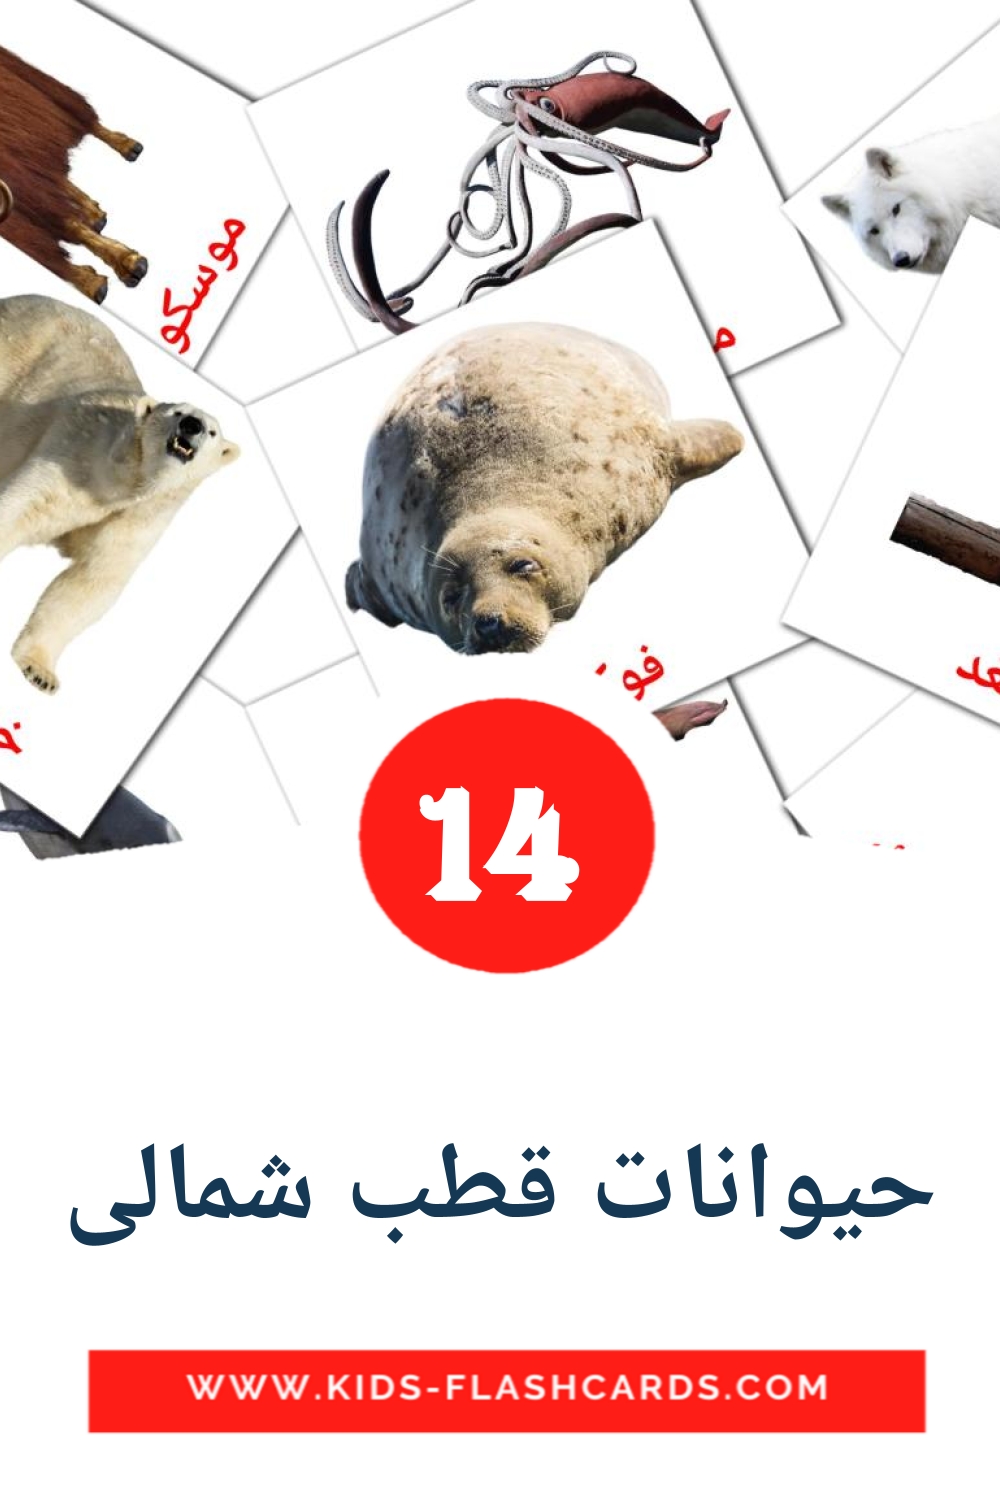 14 حیوانات قطب شمالی fotokaarten voor kleuters in het perzisch